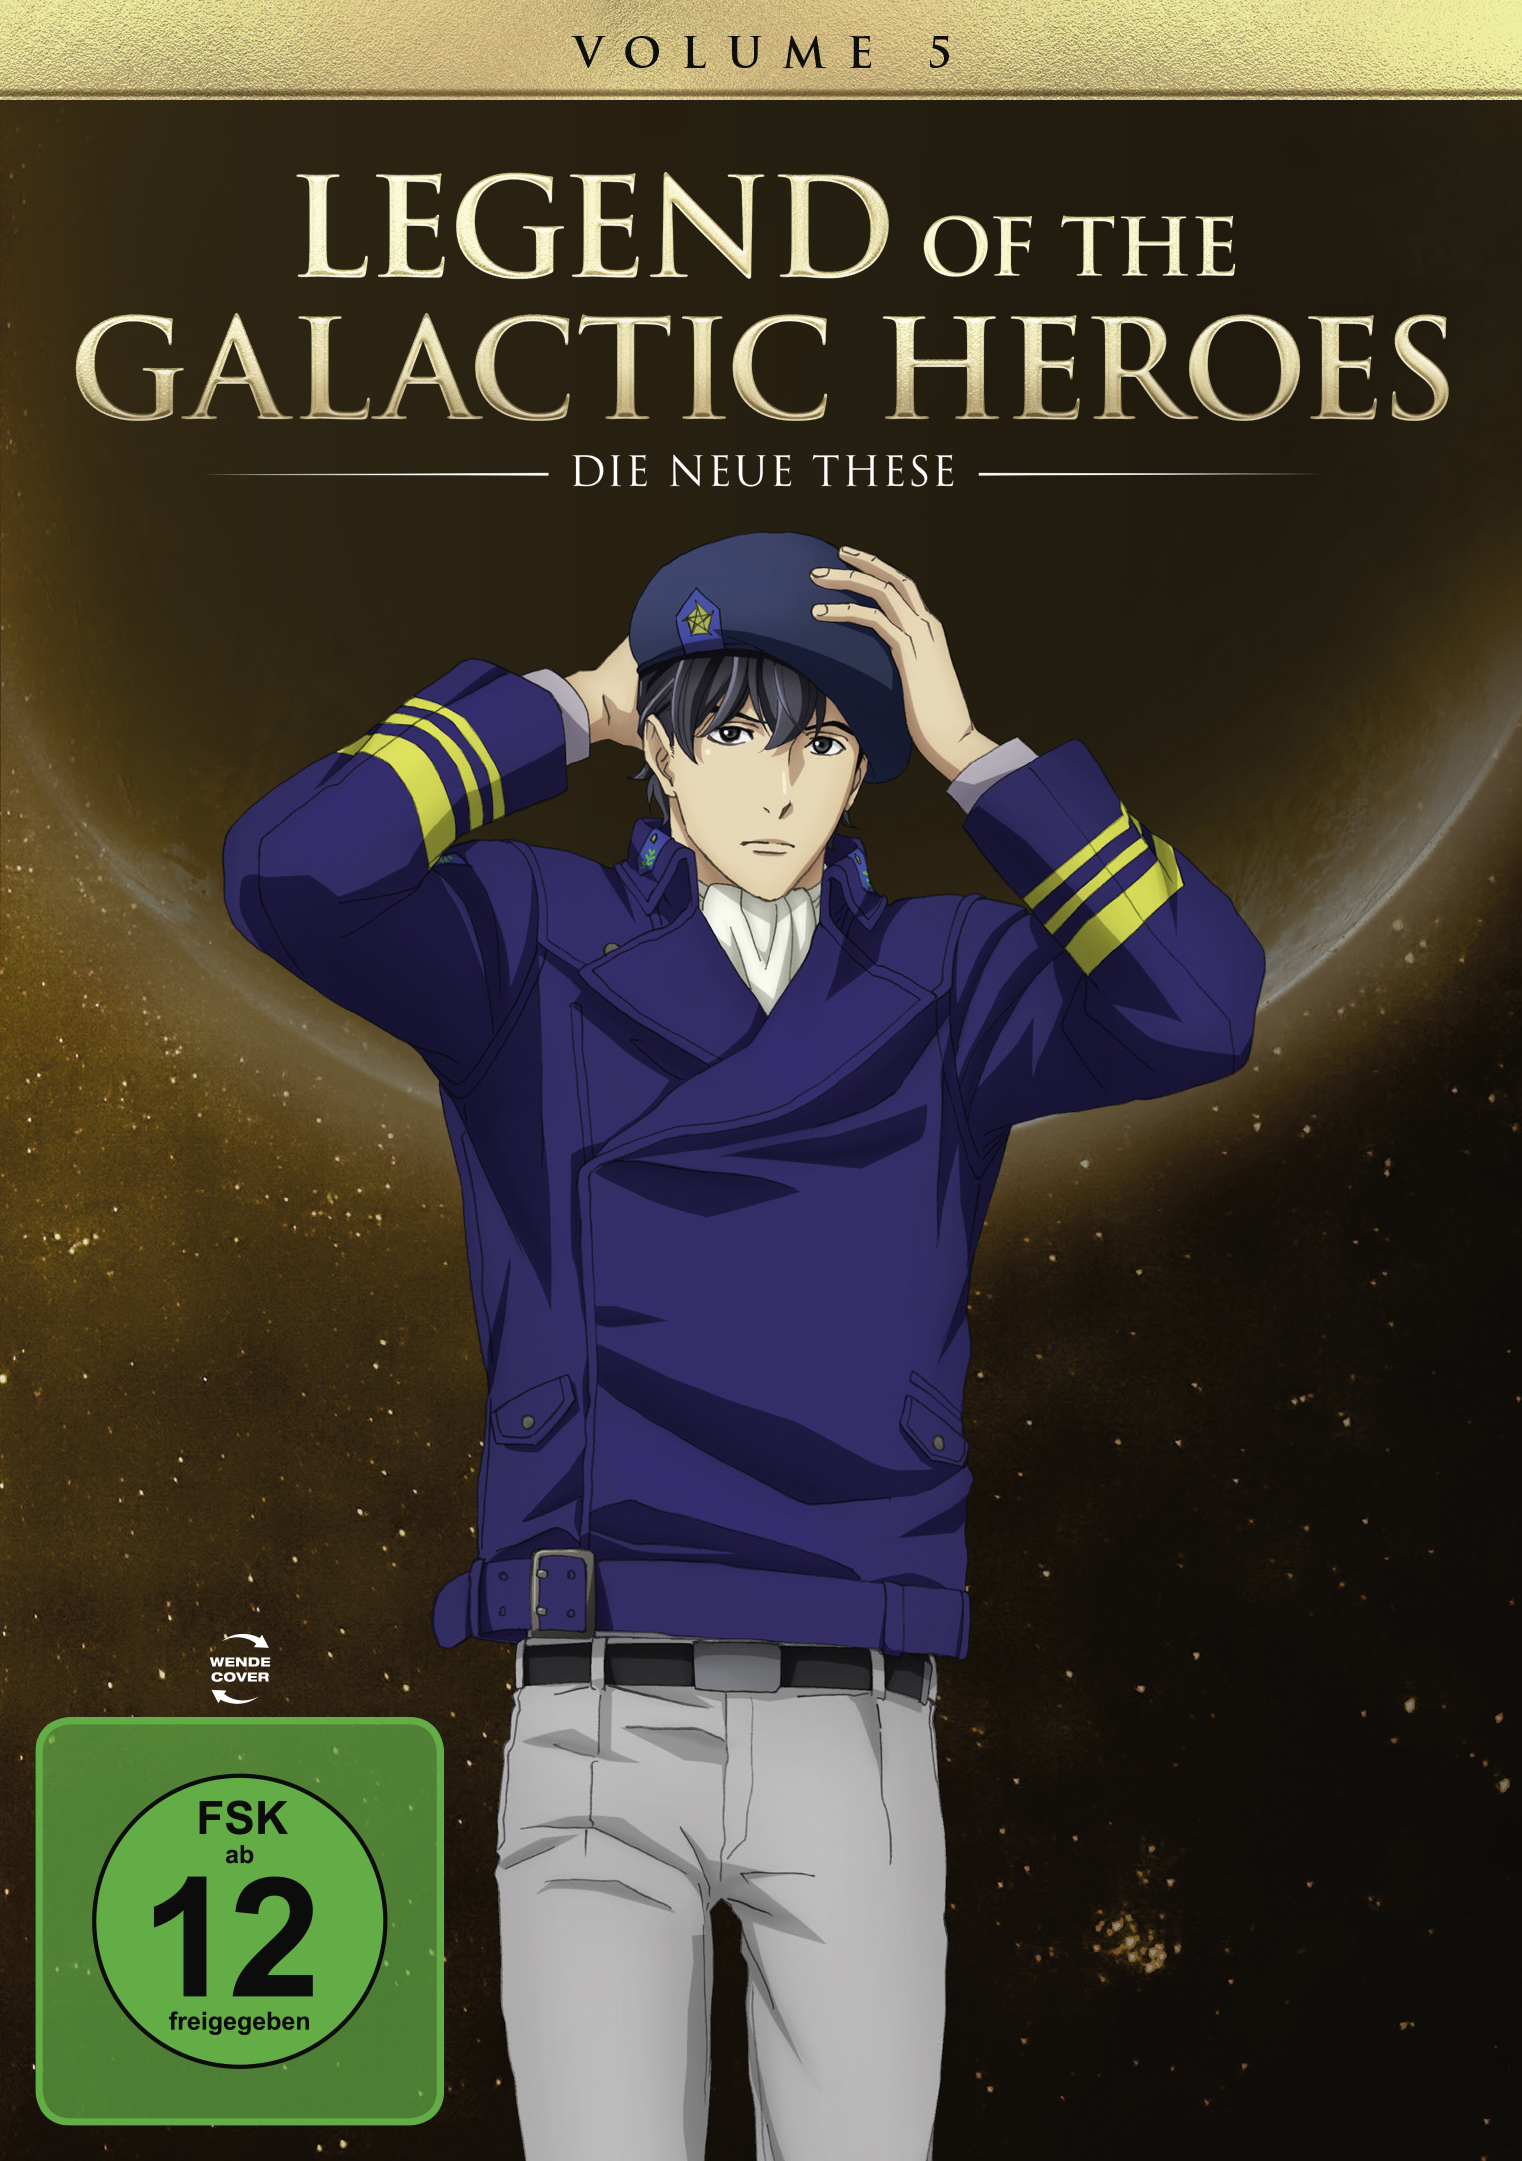 5 Neue Legend These of the Heroes: Galactic Die Vol. DVD